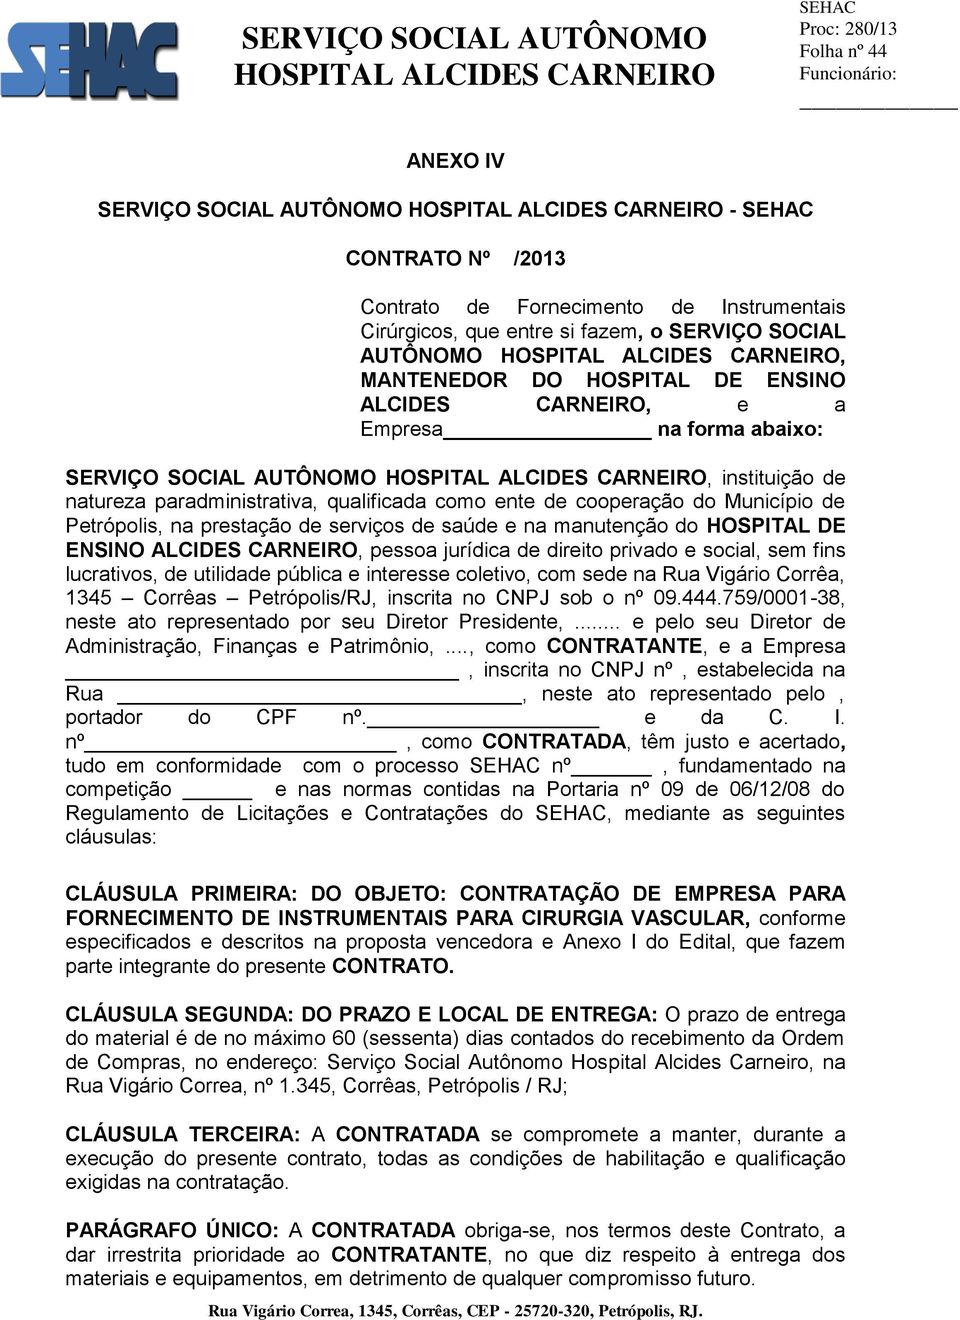 serviços de saúde e na manutenção do HOSPITAL DE ENSINO ALCIDES CARNEIRO, pessoa jurídica de direito privado e social, sem fins lucrativos, de utilidade pública e interesse coletivo, com sede na Rua